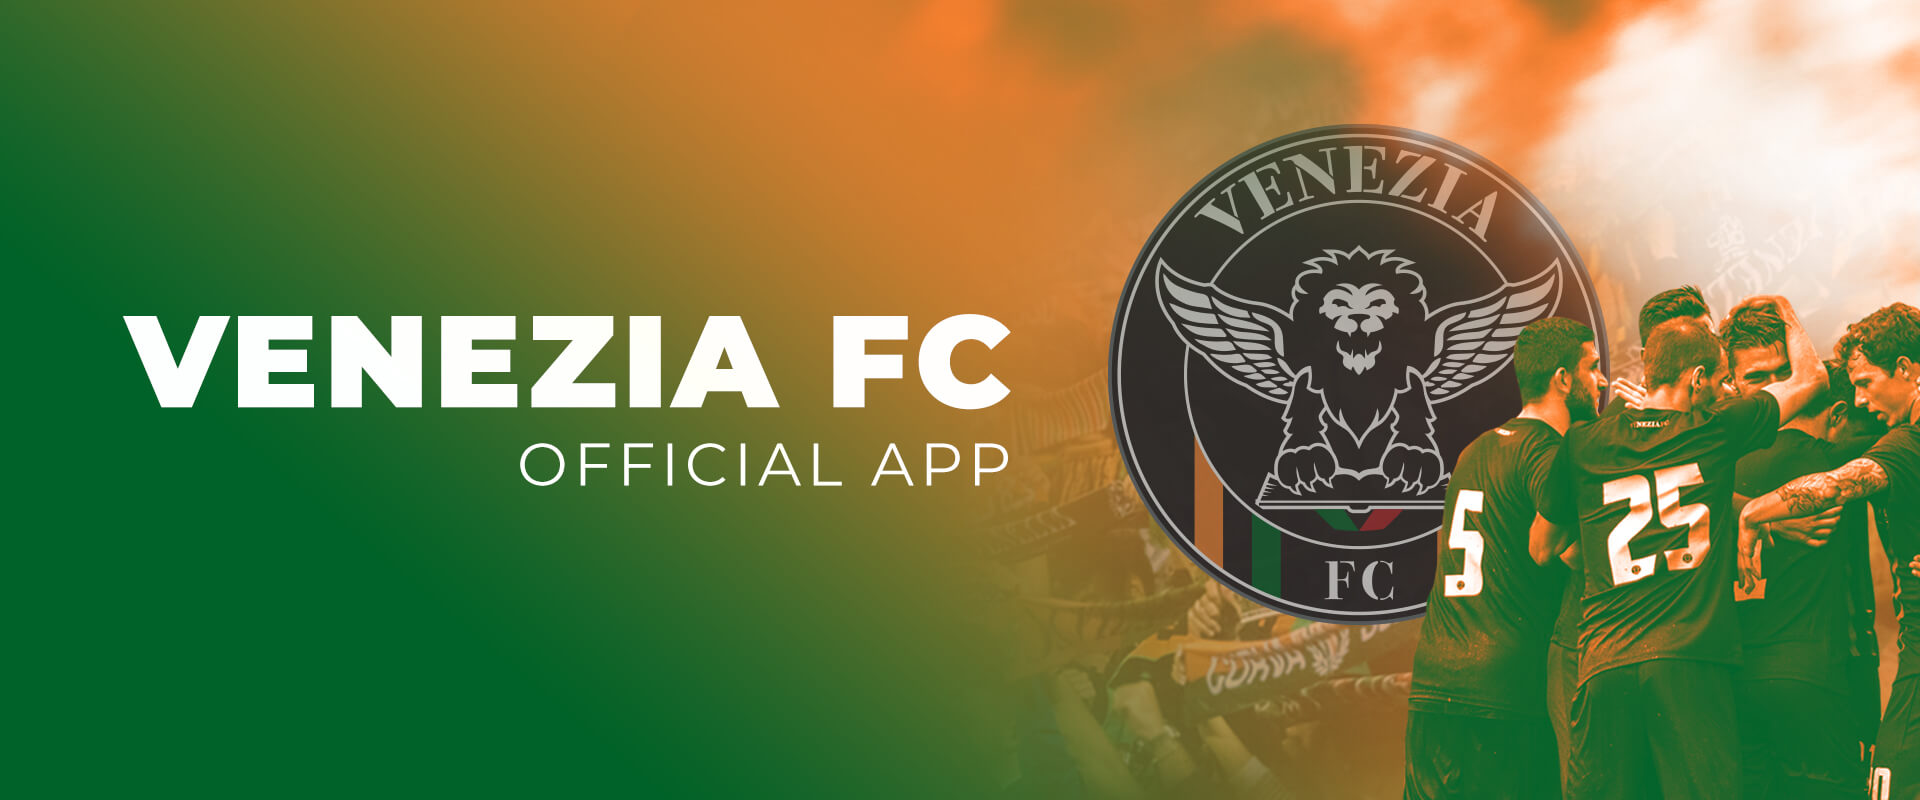 official app venezia fc